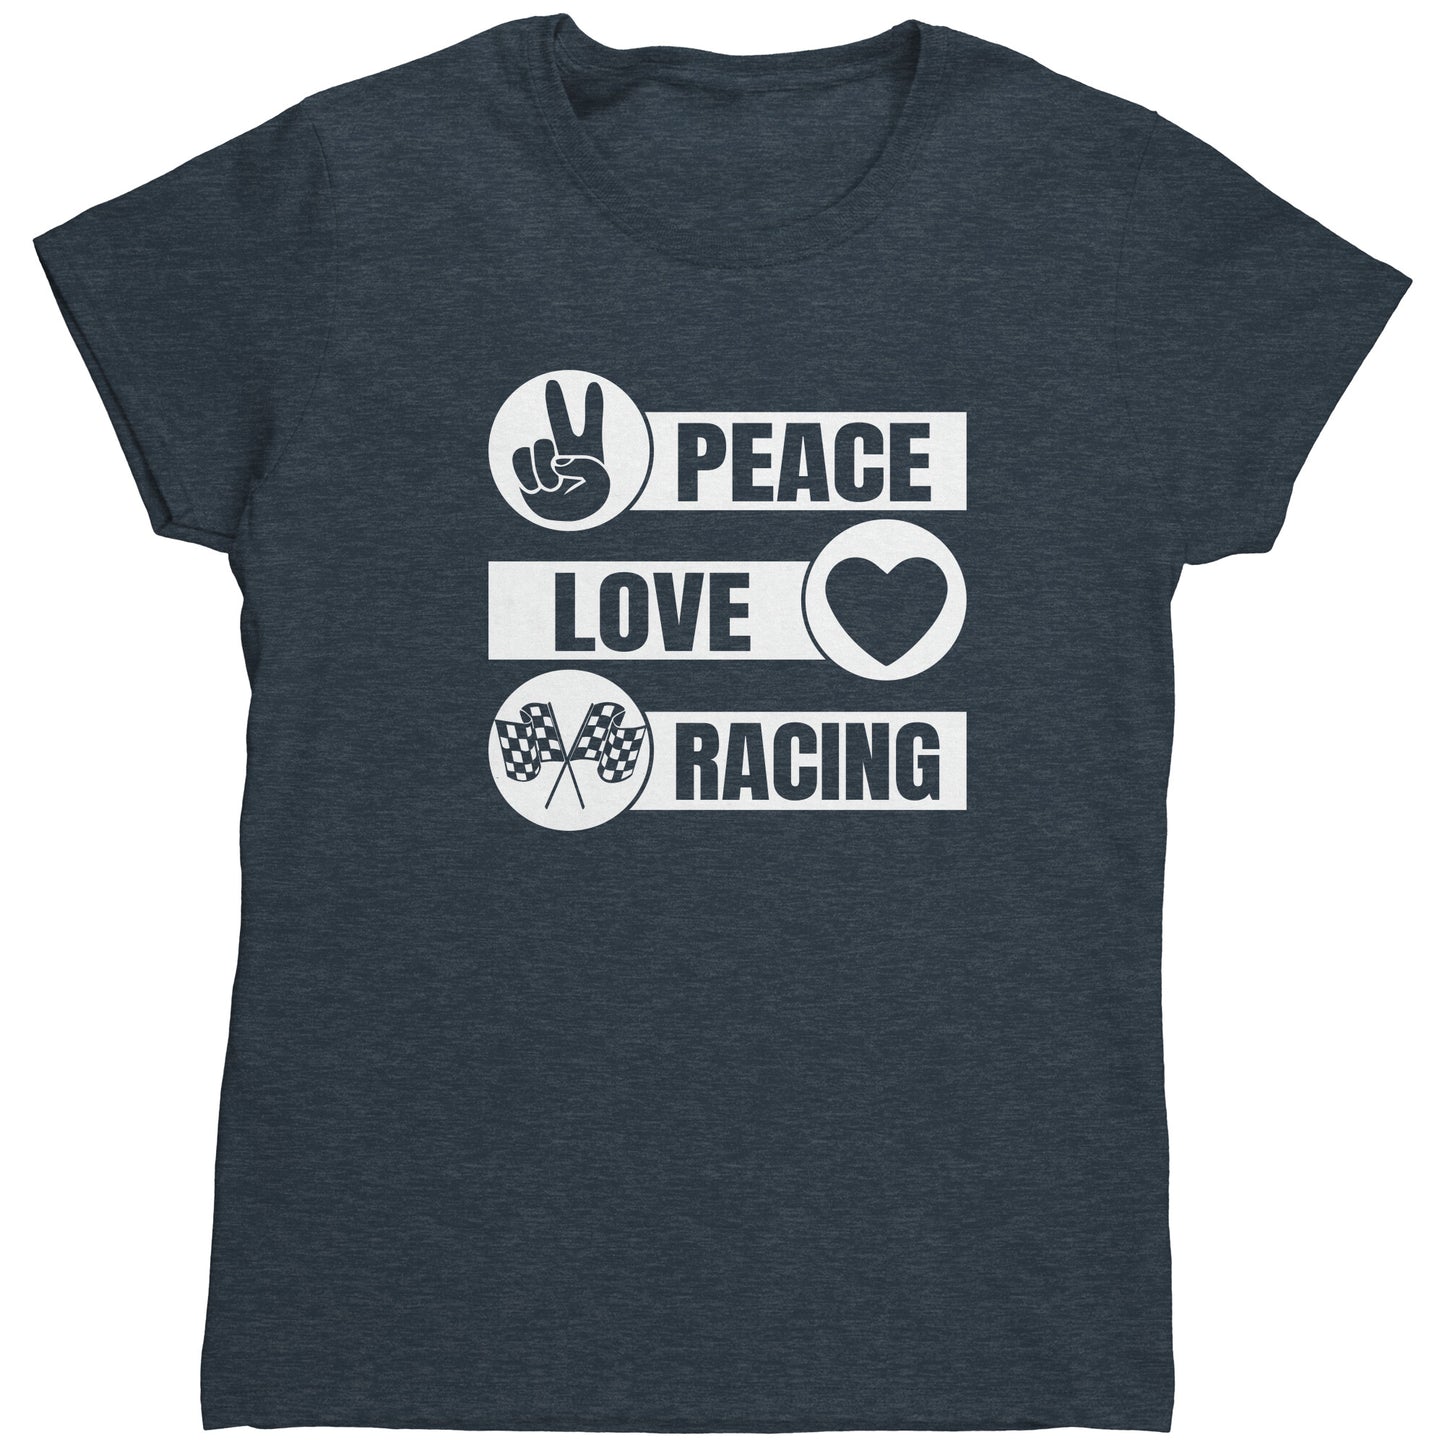 Peace Love Racing Women's T-Shirt